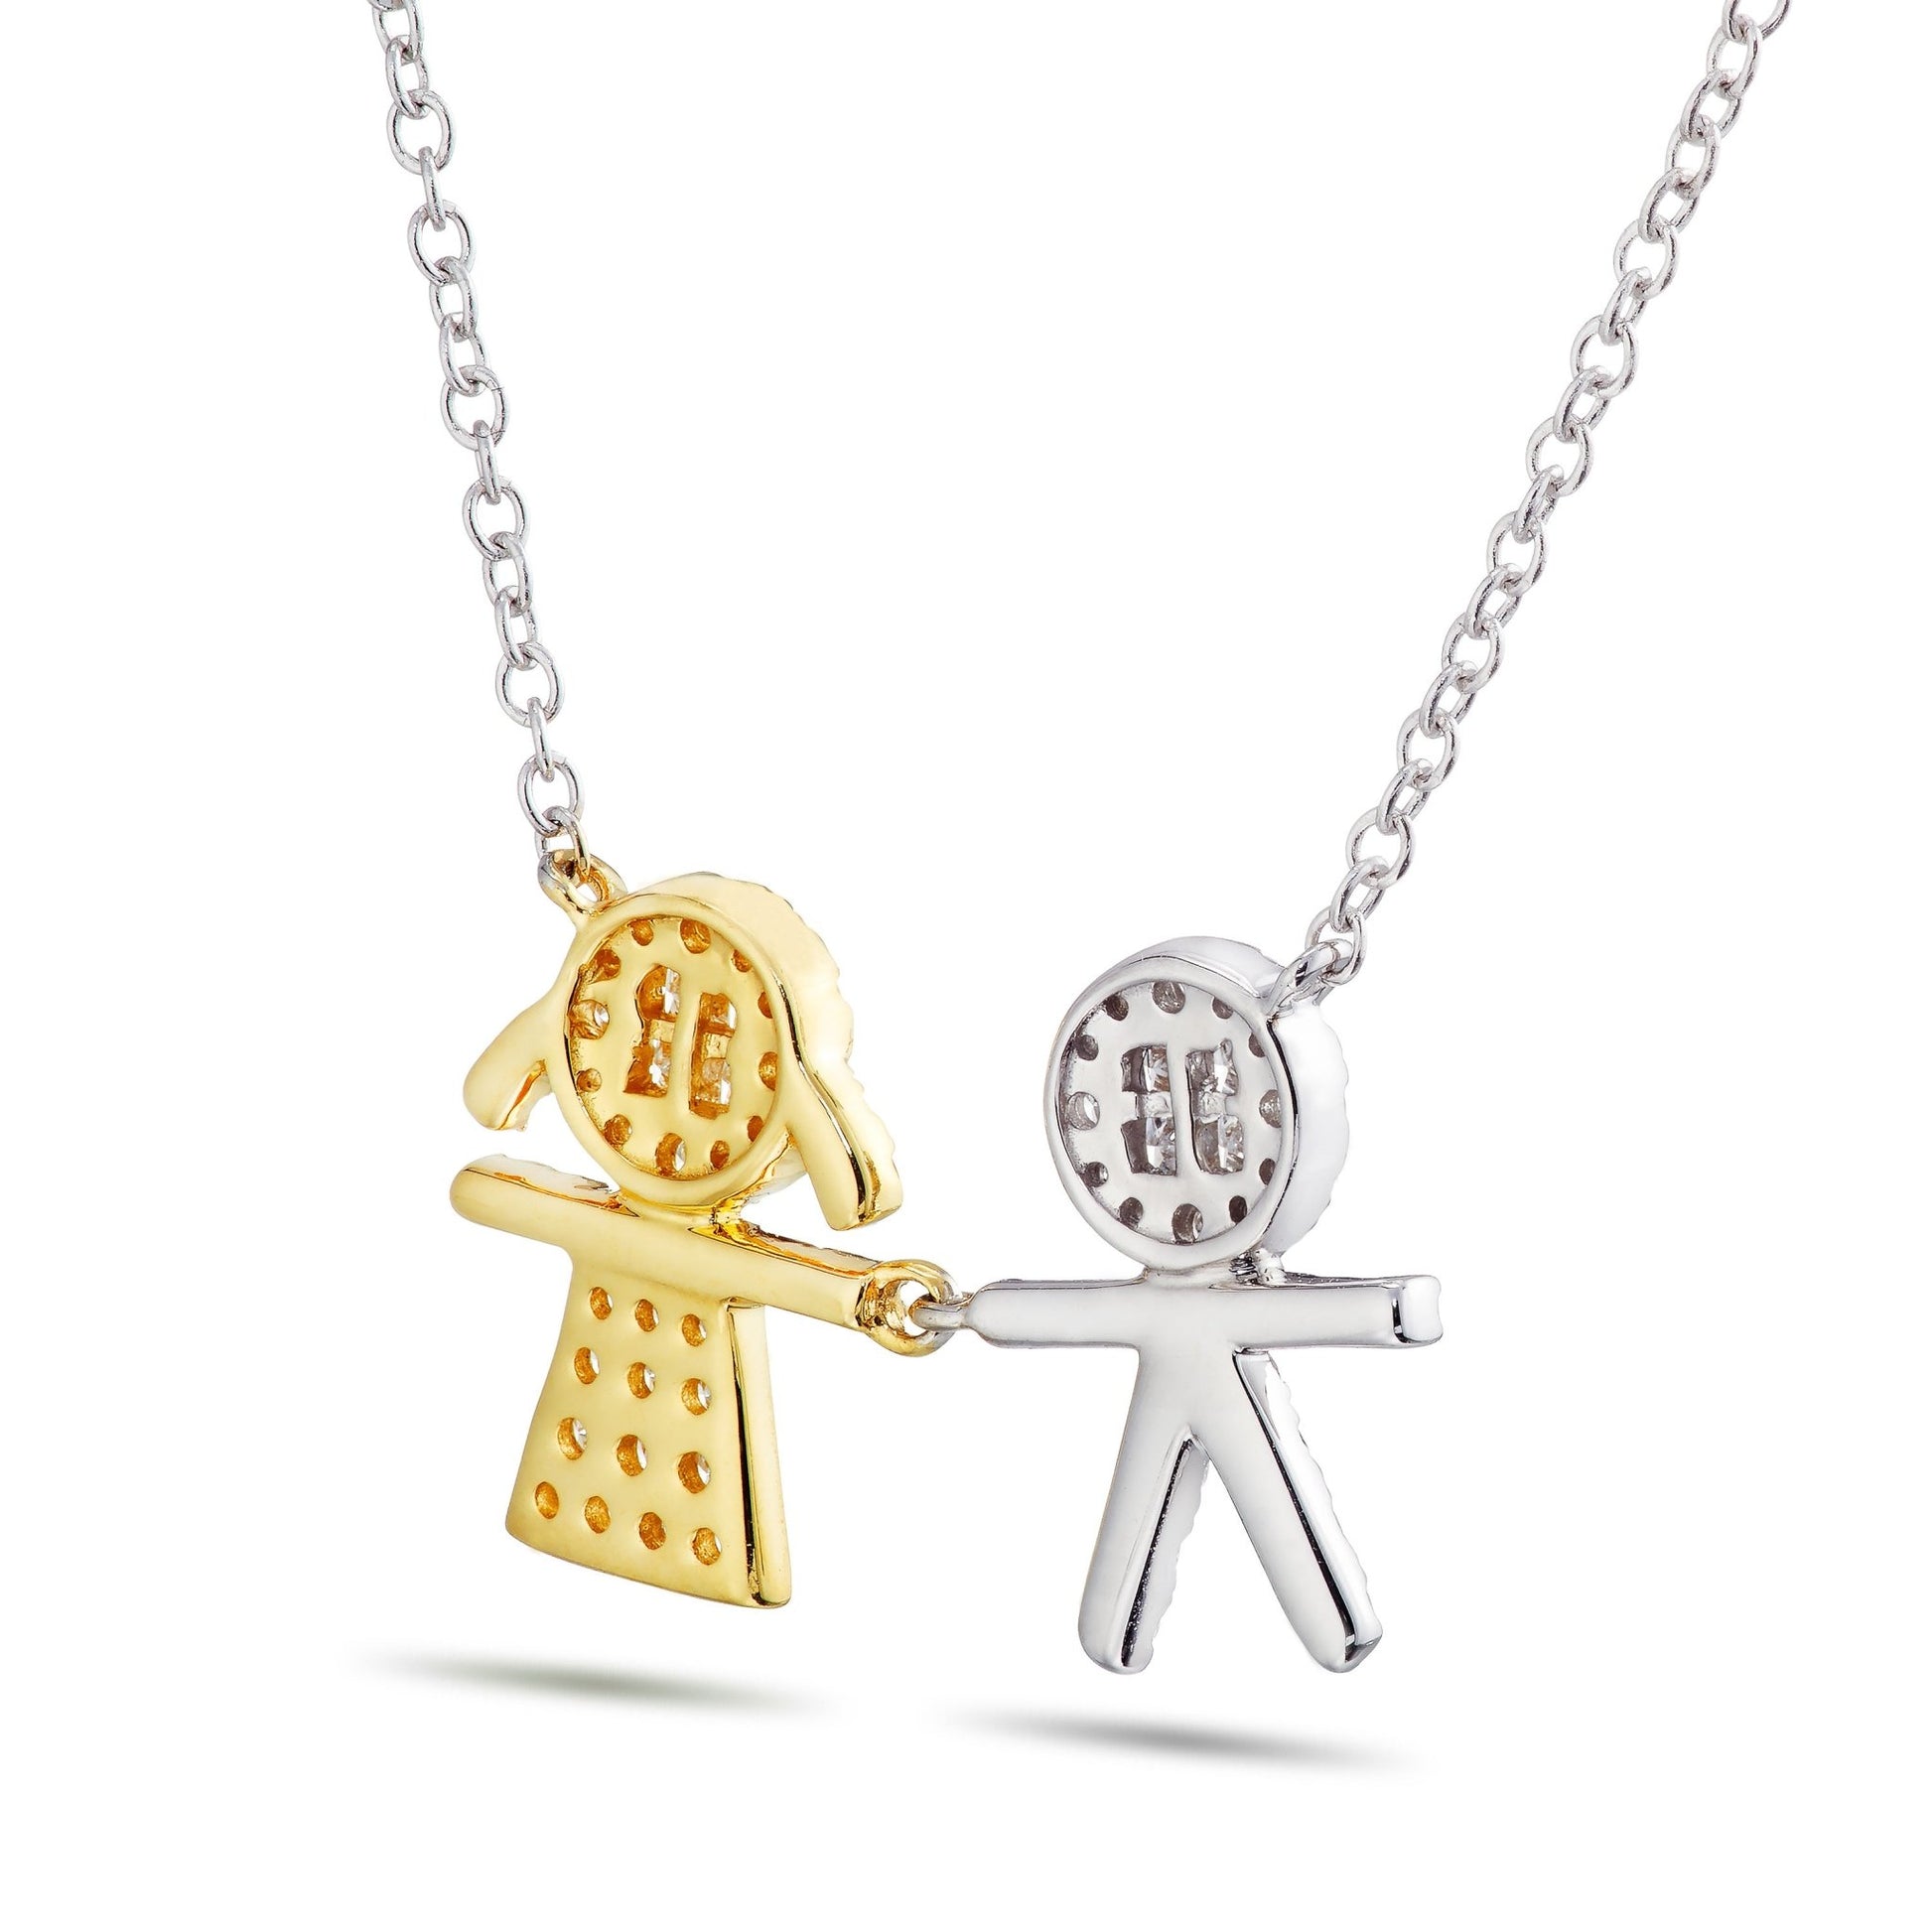 Boy & Girl Duo Diamond Necklace - Shyne Jewelers 165-00259 Shyne Jewelers